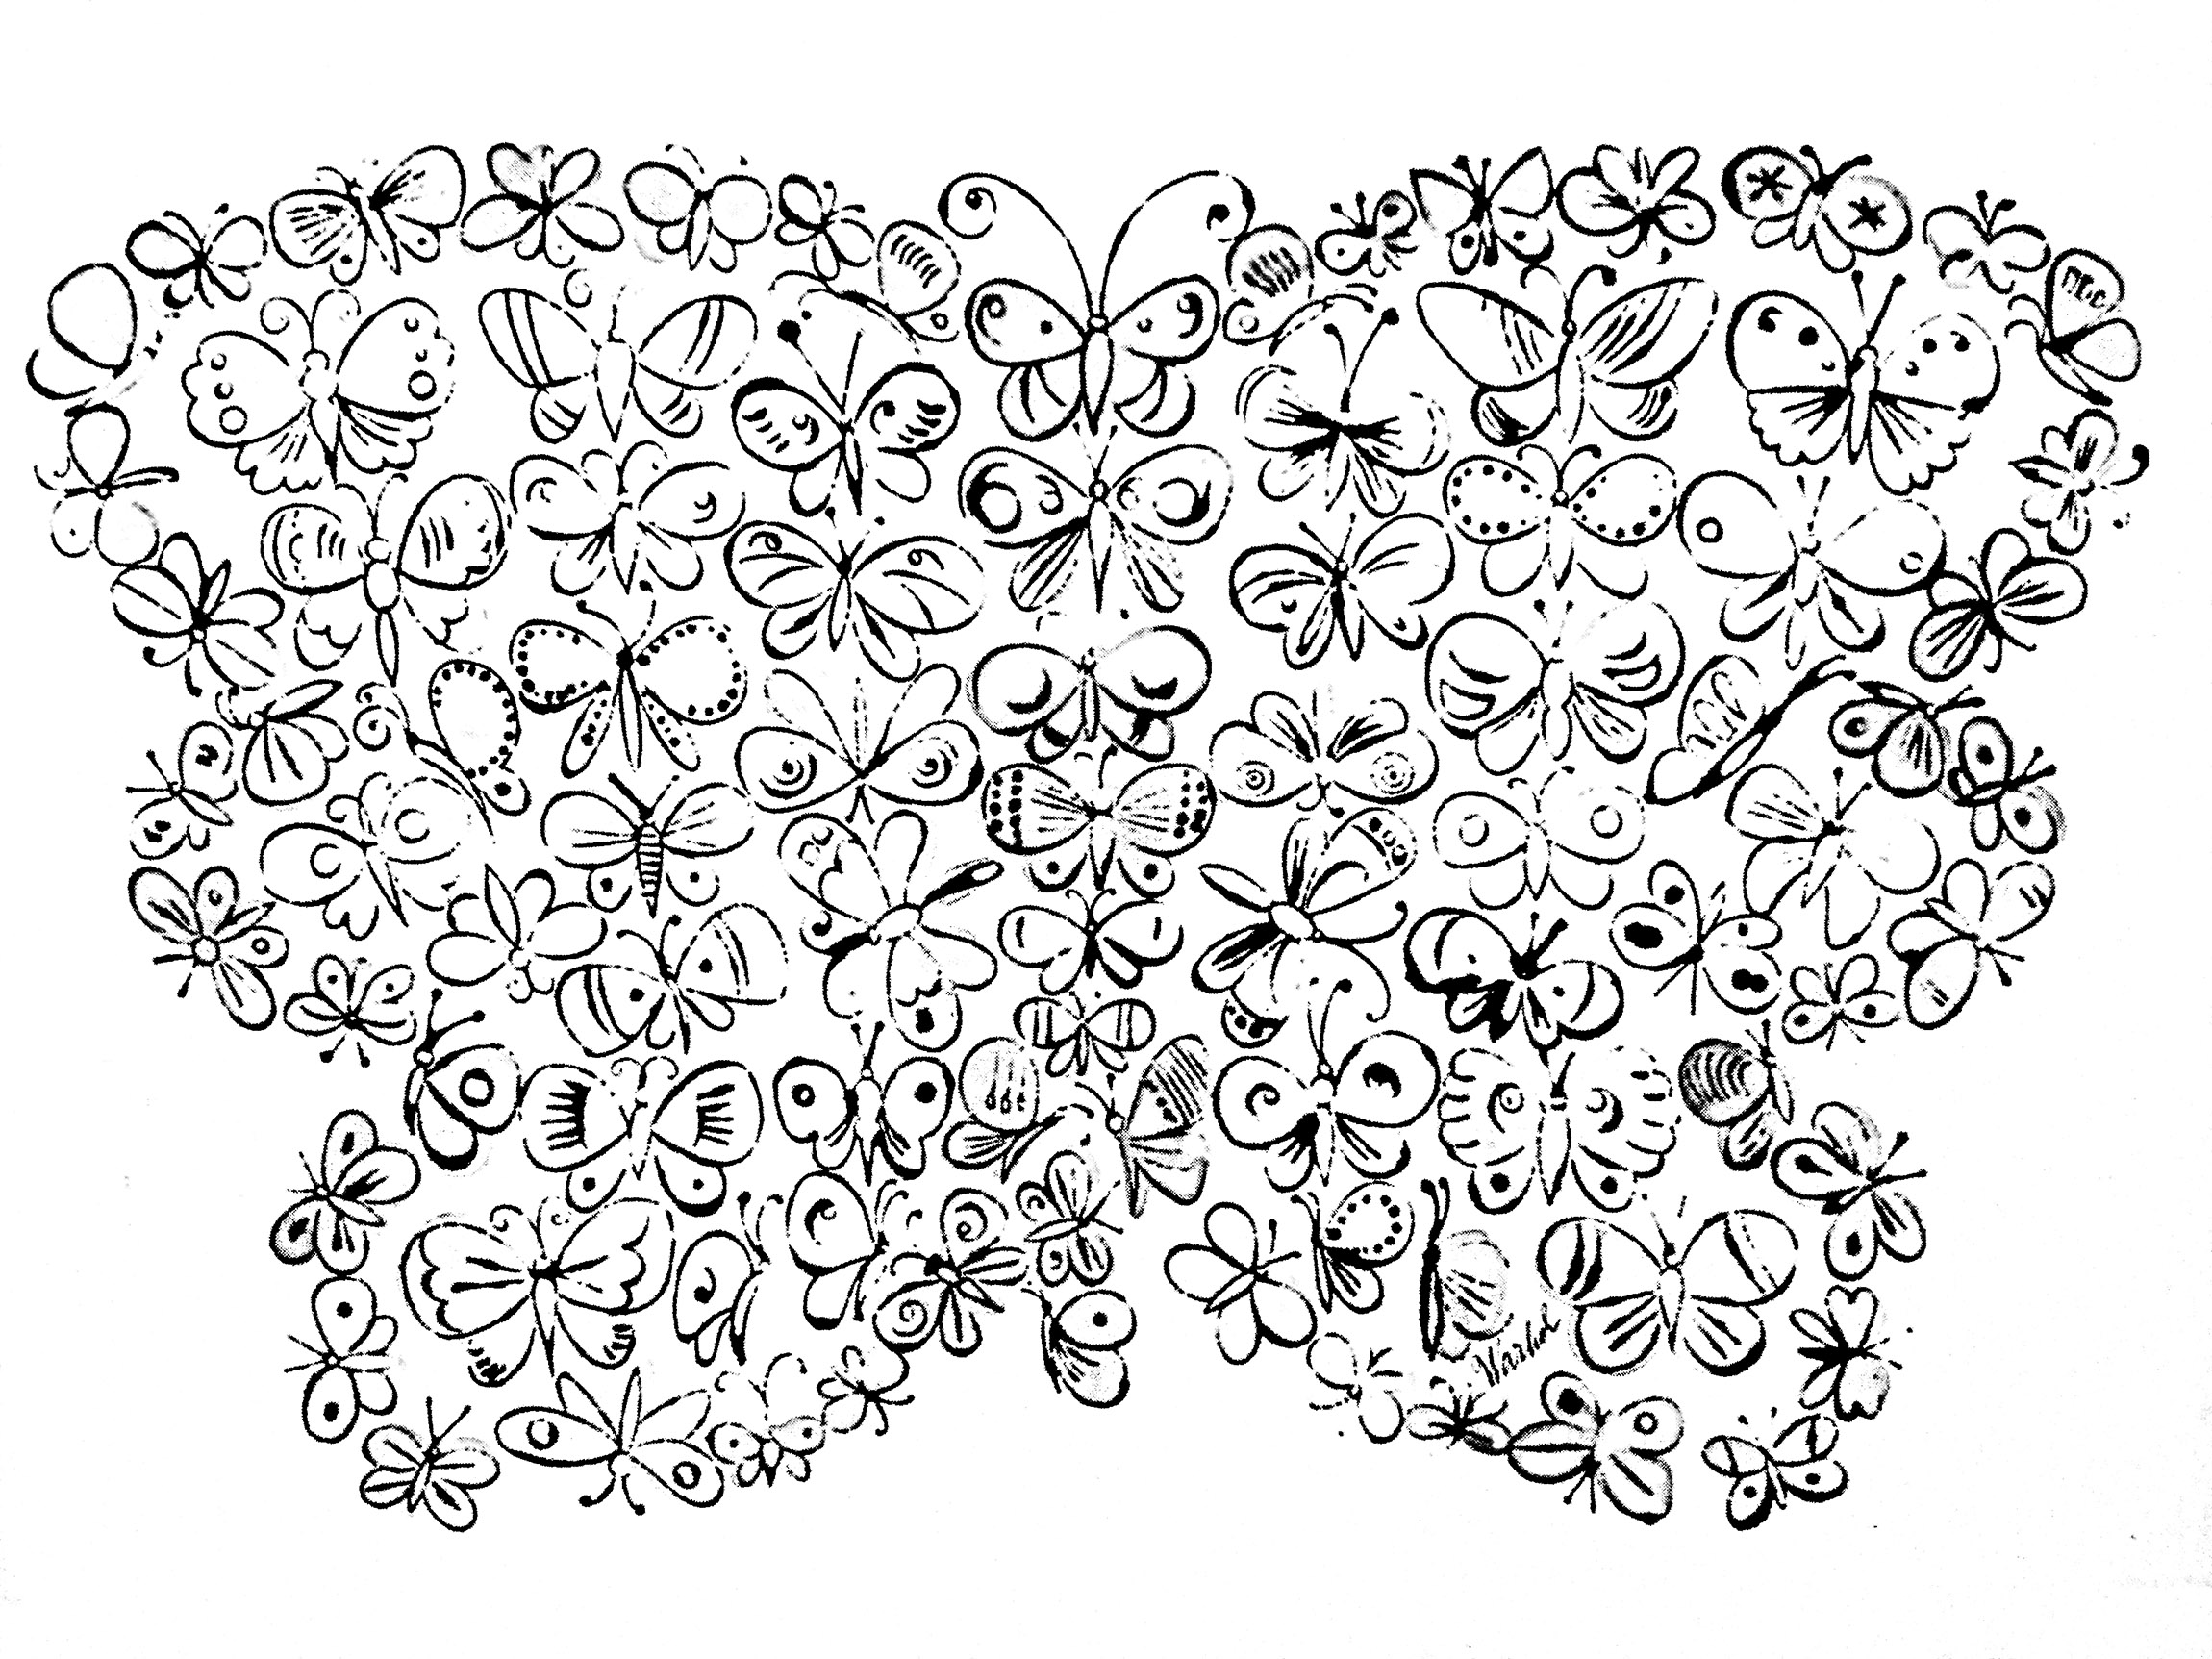 Coloriage créé à partir d'une oeuvre de Andy Warhol représentant des papillons